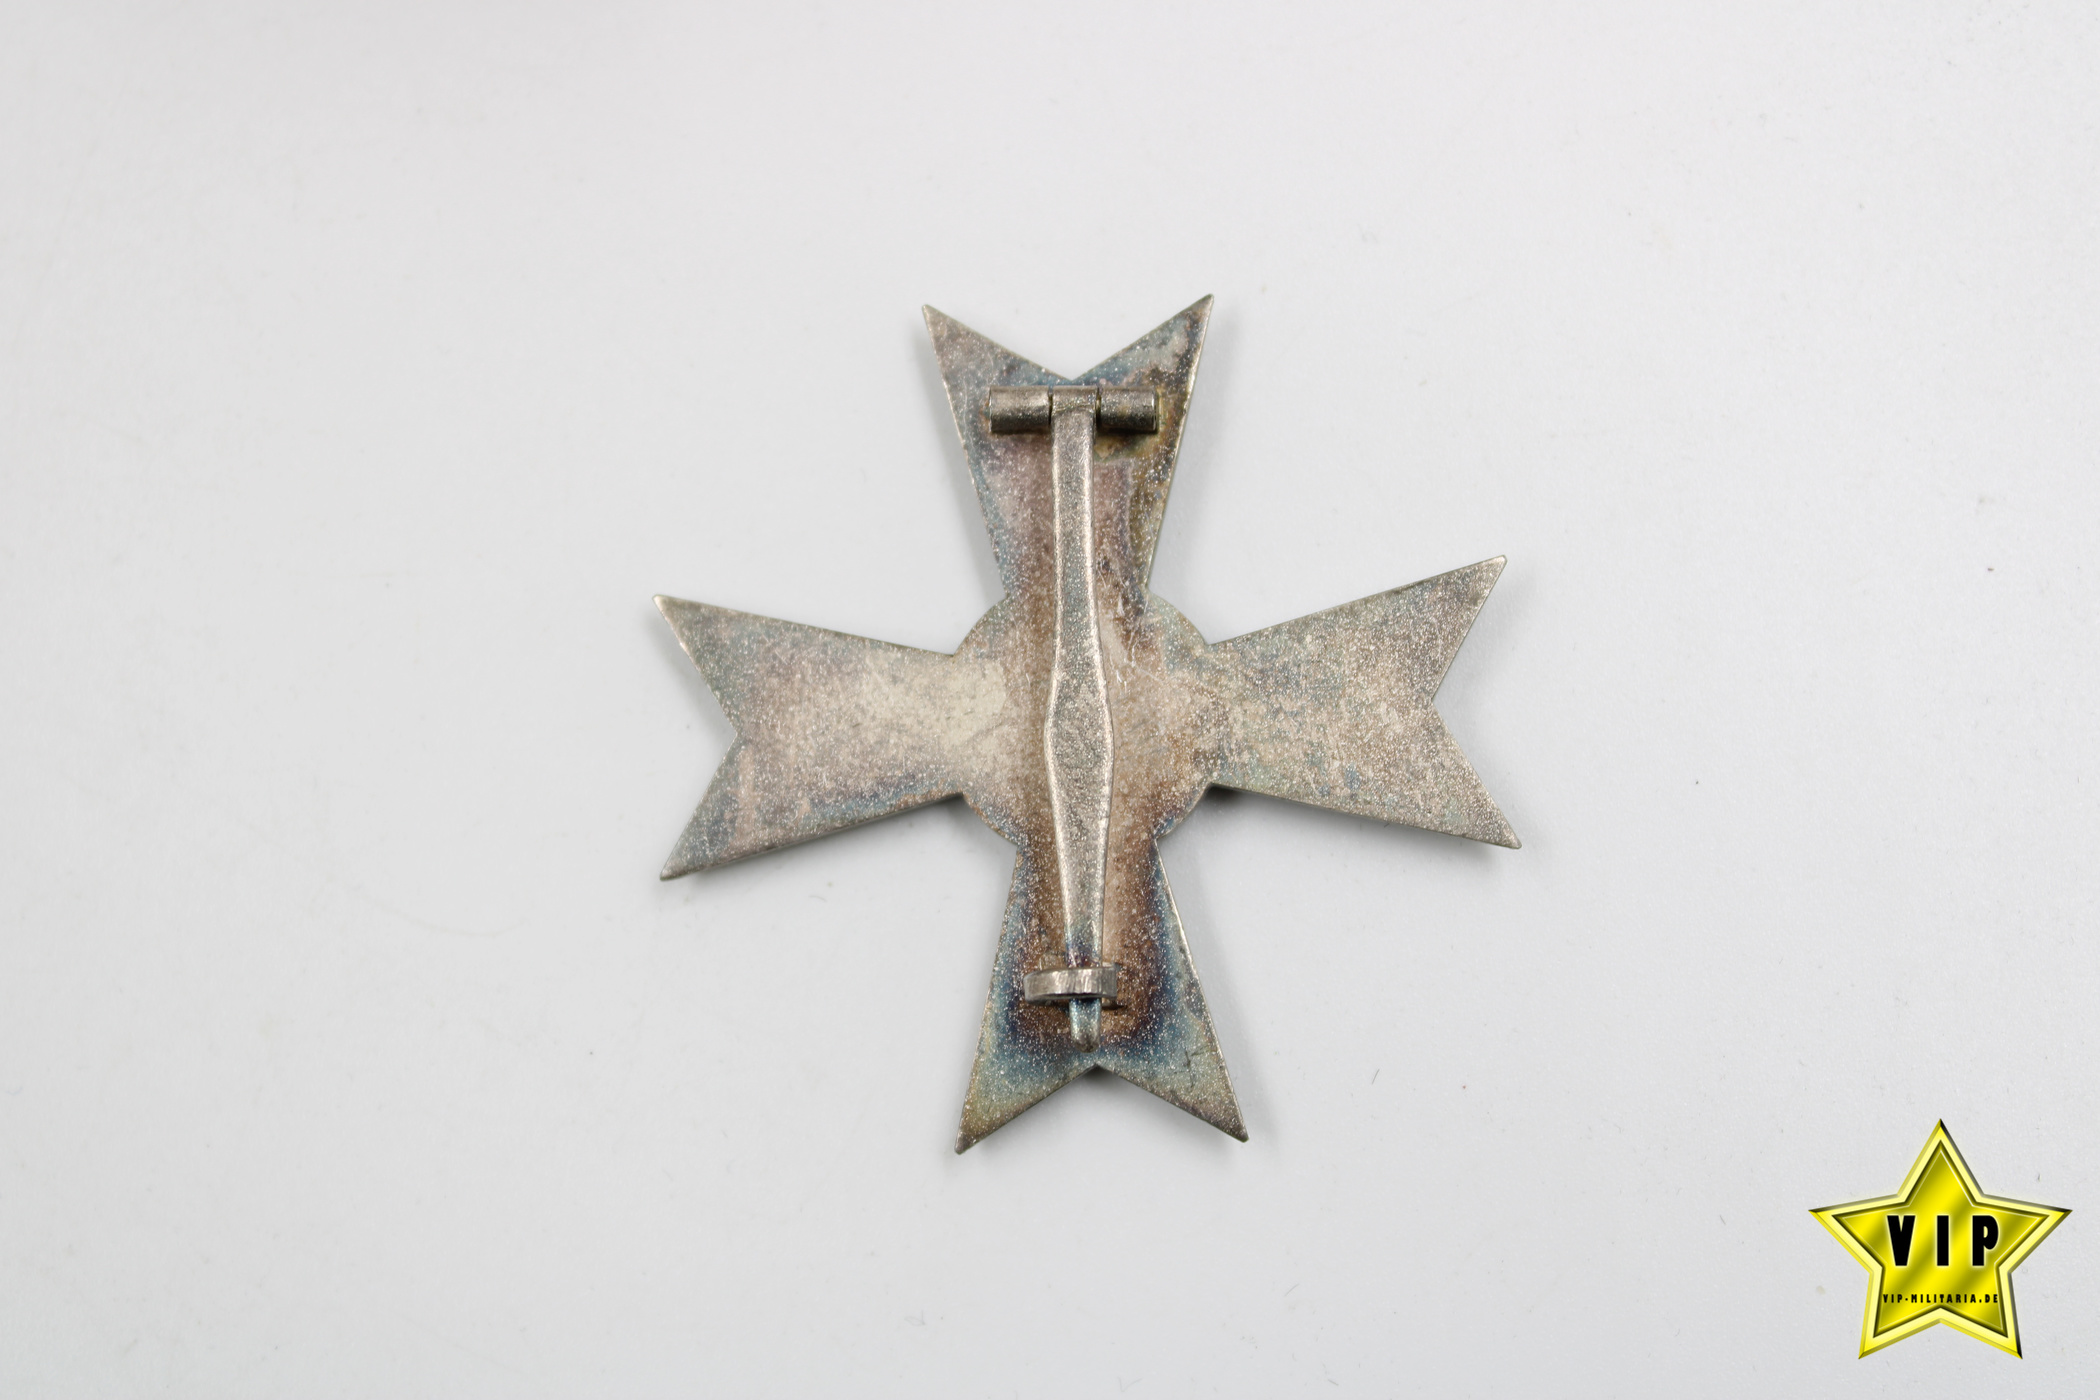 Kriegsverdienstkreuz 1. Klasse ohne Schwerter im Etui + Umkarton Hersteller 1 Deschler & Sohn, München 